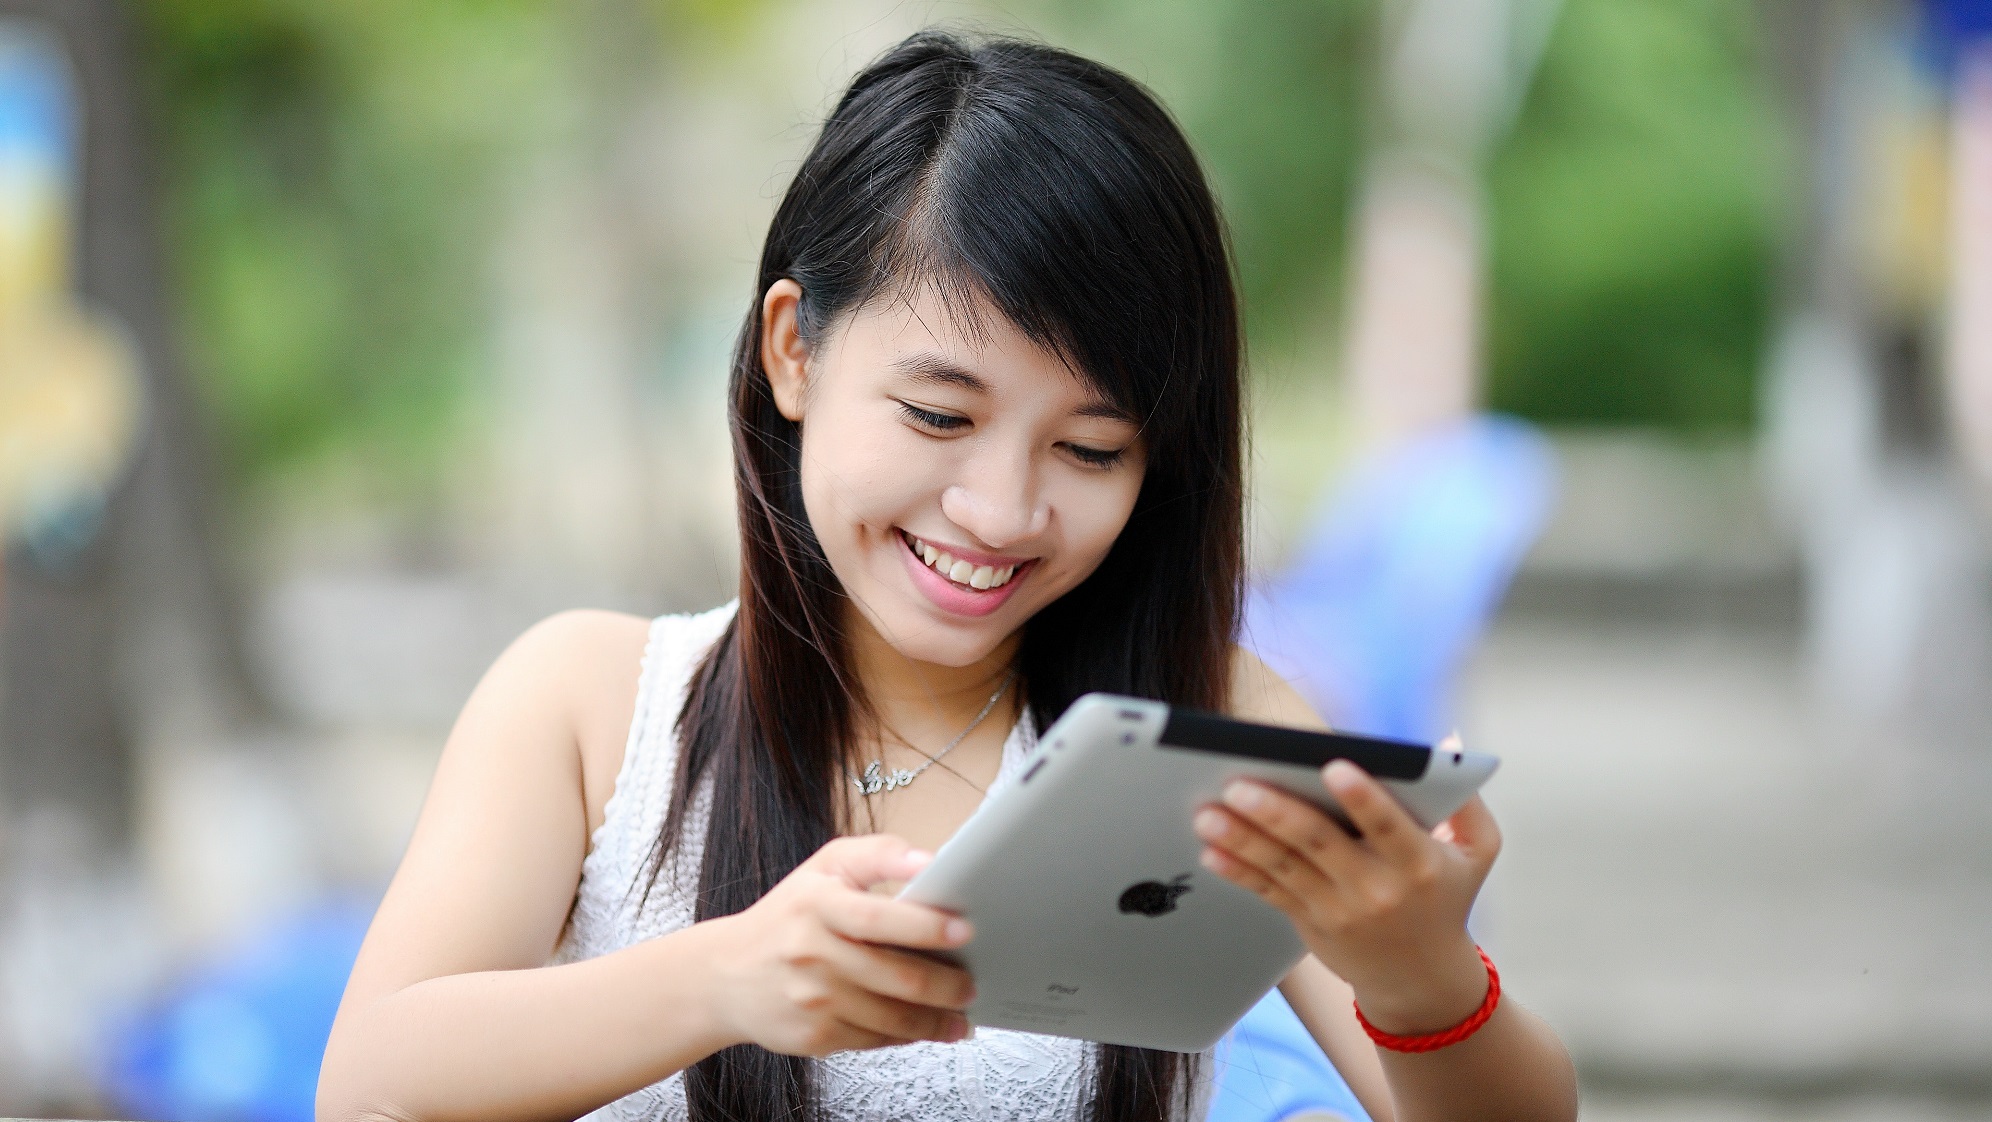 Ein Mädchen schaut lächelnd auf ein Tablet.